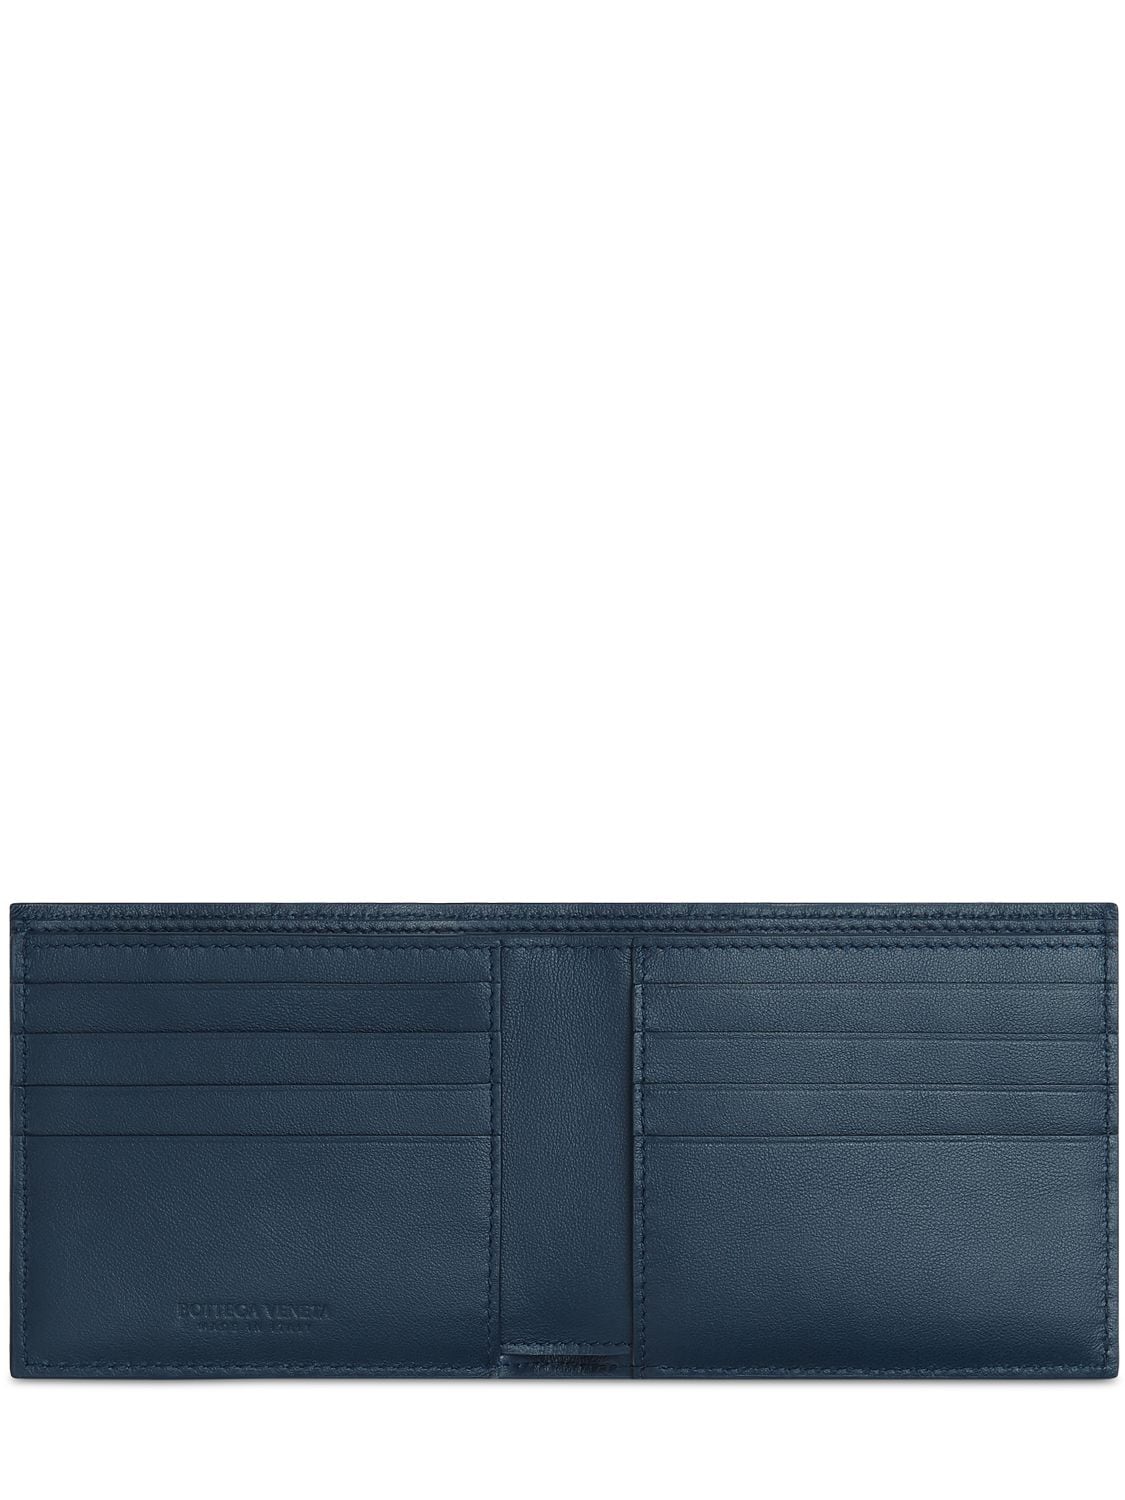 Shop Bottega Veneta Intrecciato Leather Bi-fold Wallet In Dark Blue